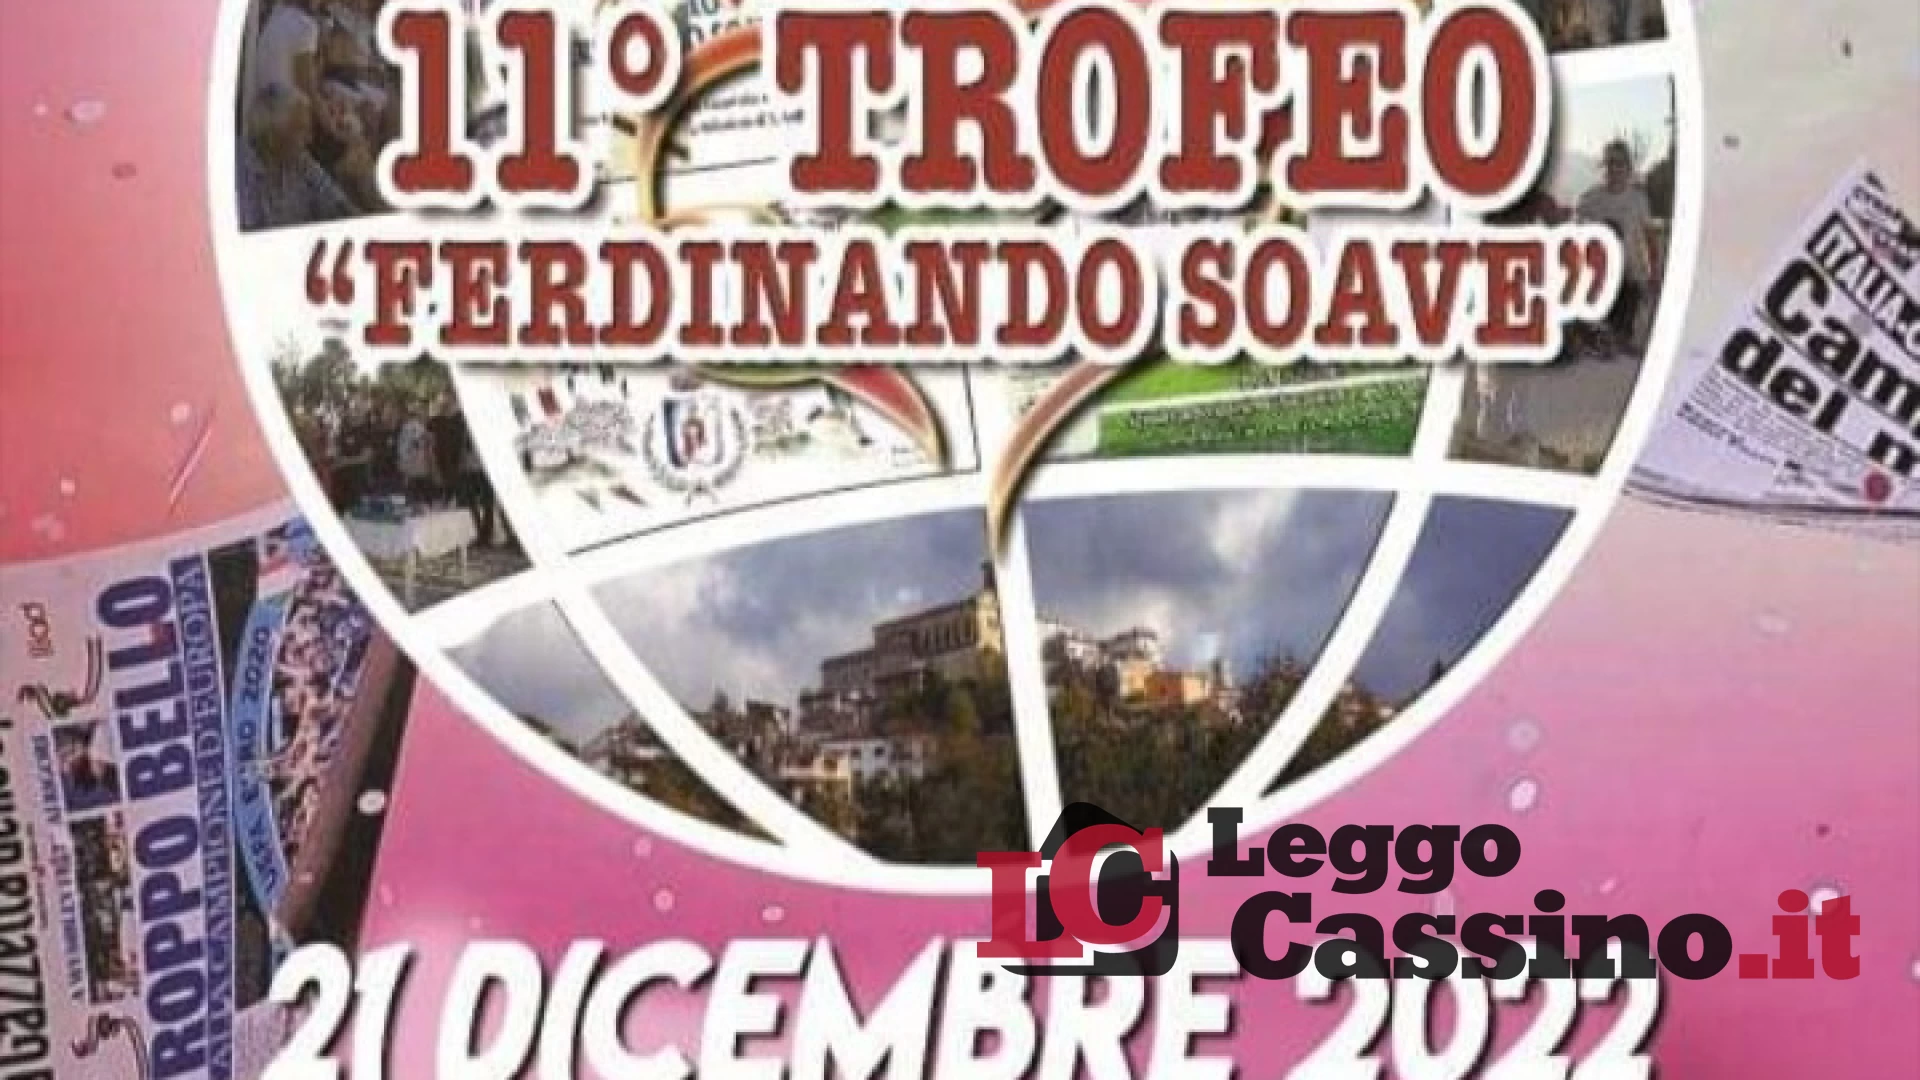 L’11° Trofeo “Ferdinando Soave” il 21 dicembre